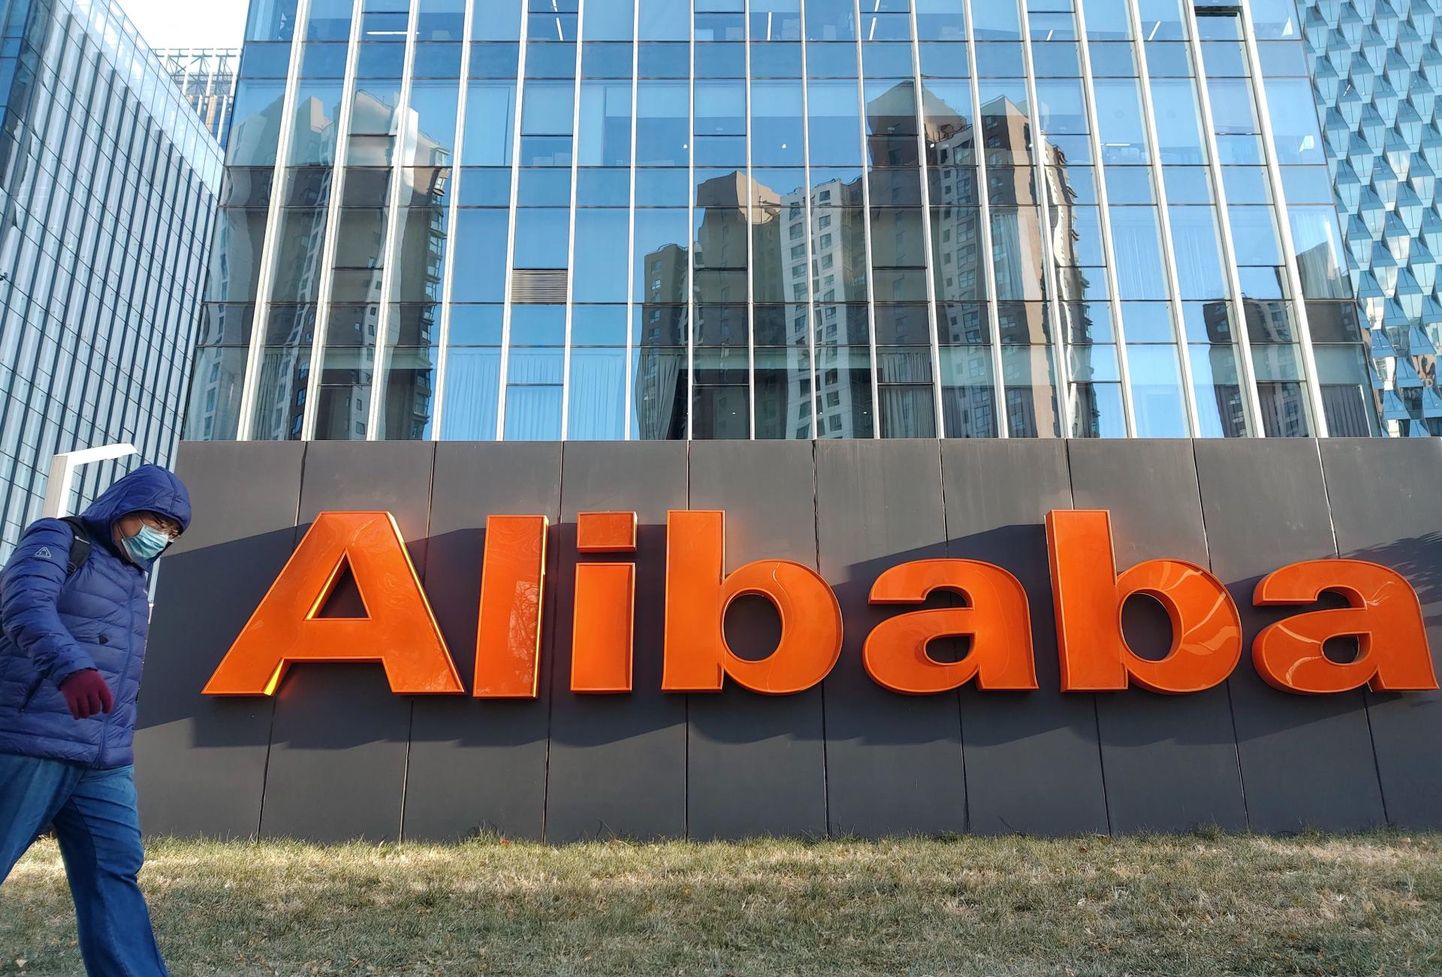 Alibaba pakub näotuvastusteenust, mis võimaldab kindlaks teha uiguuri rahvusest inimesed.